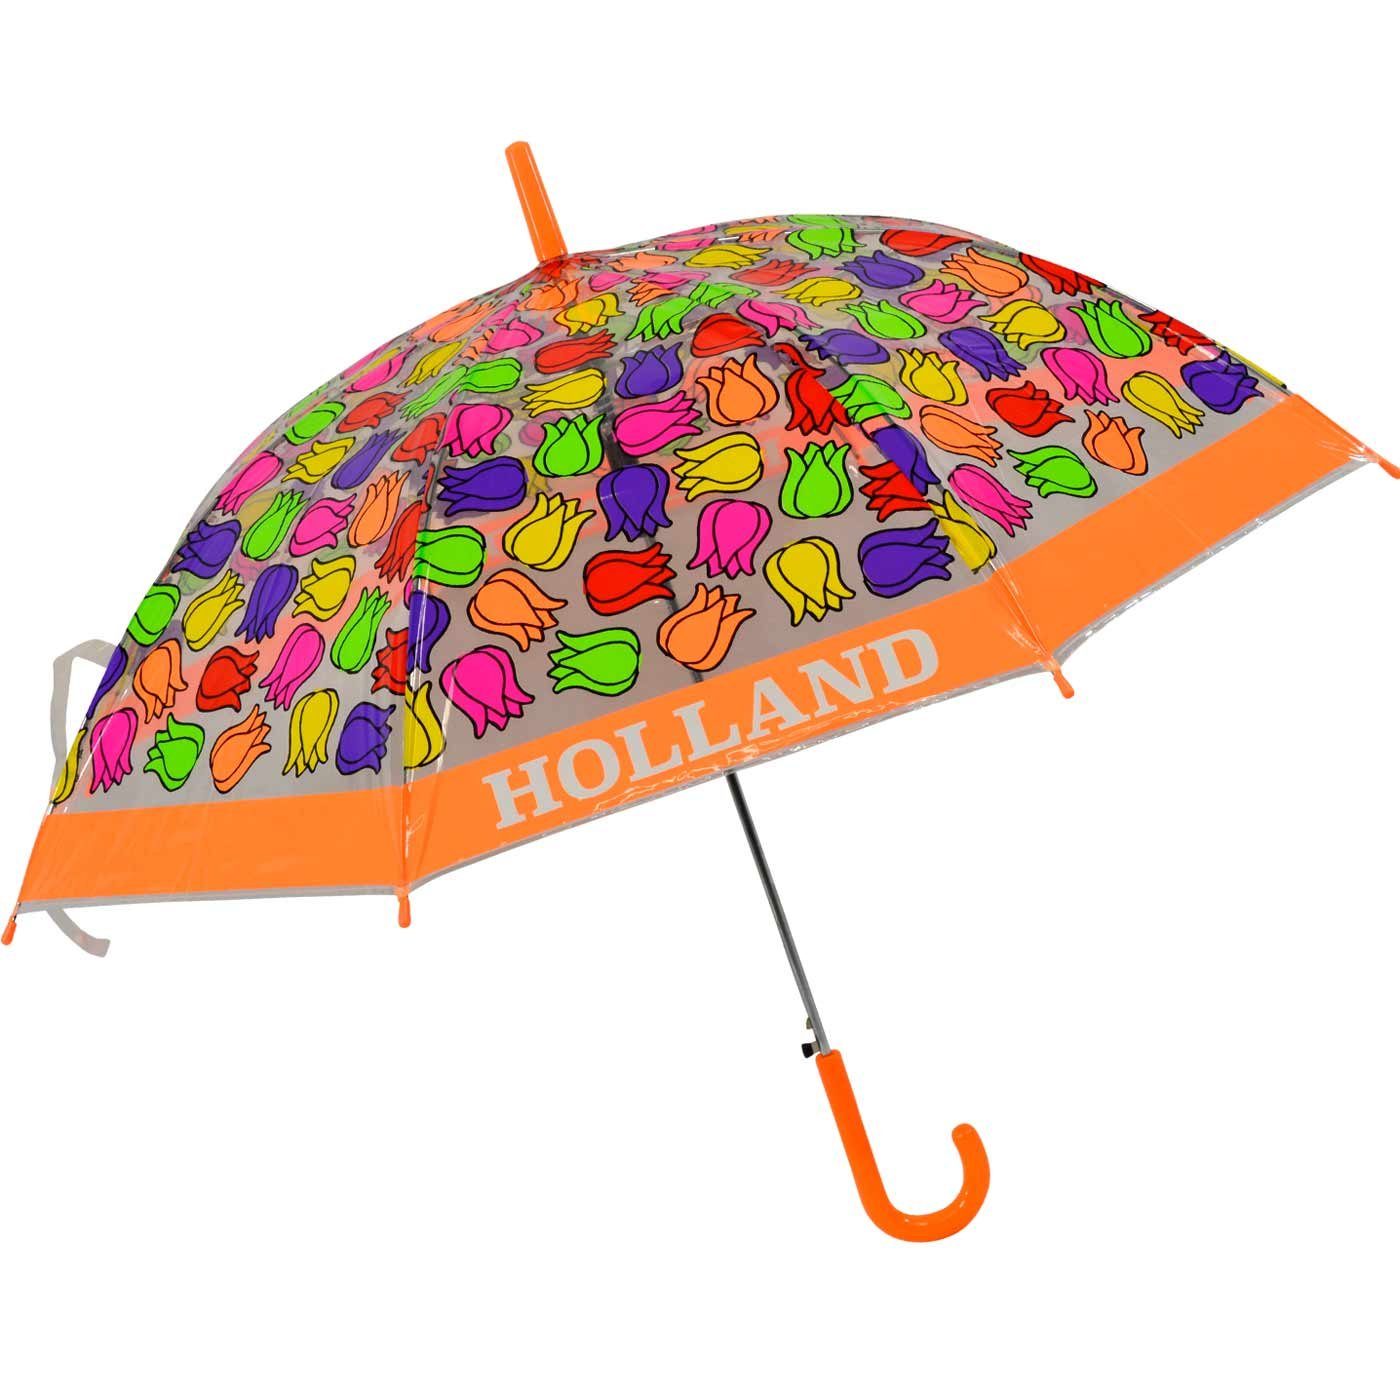 durchsichtig orange - Impliva bunt Langregenschirm Tulpen, Falconetti transparent Kinderschirm